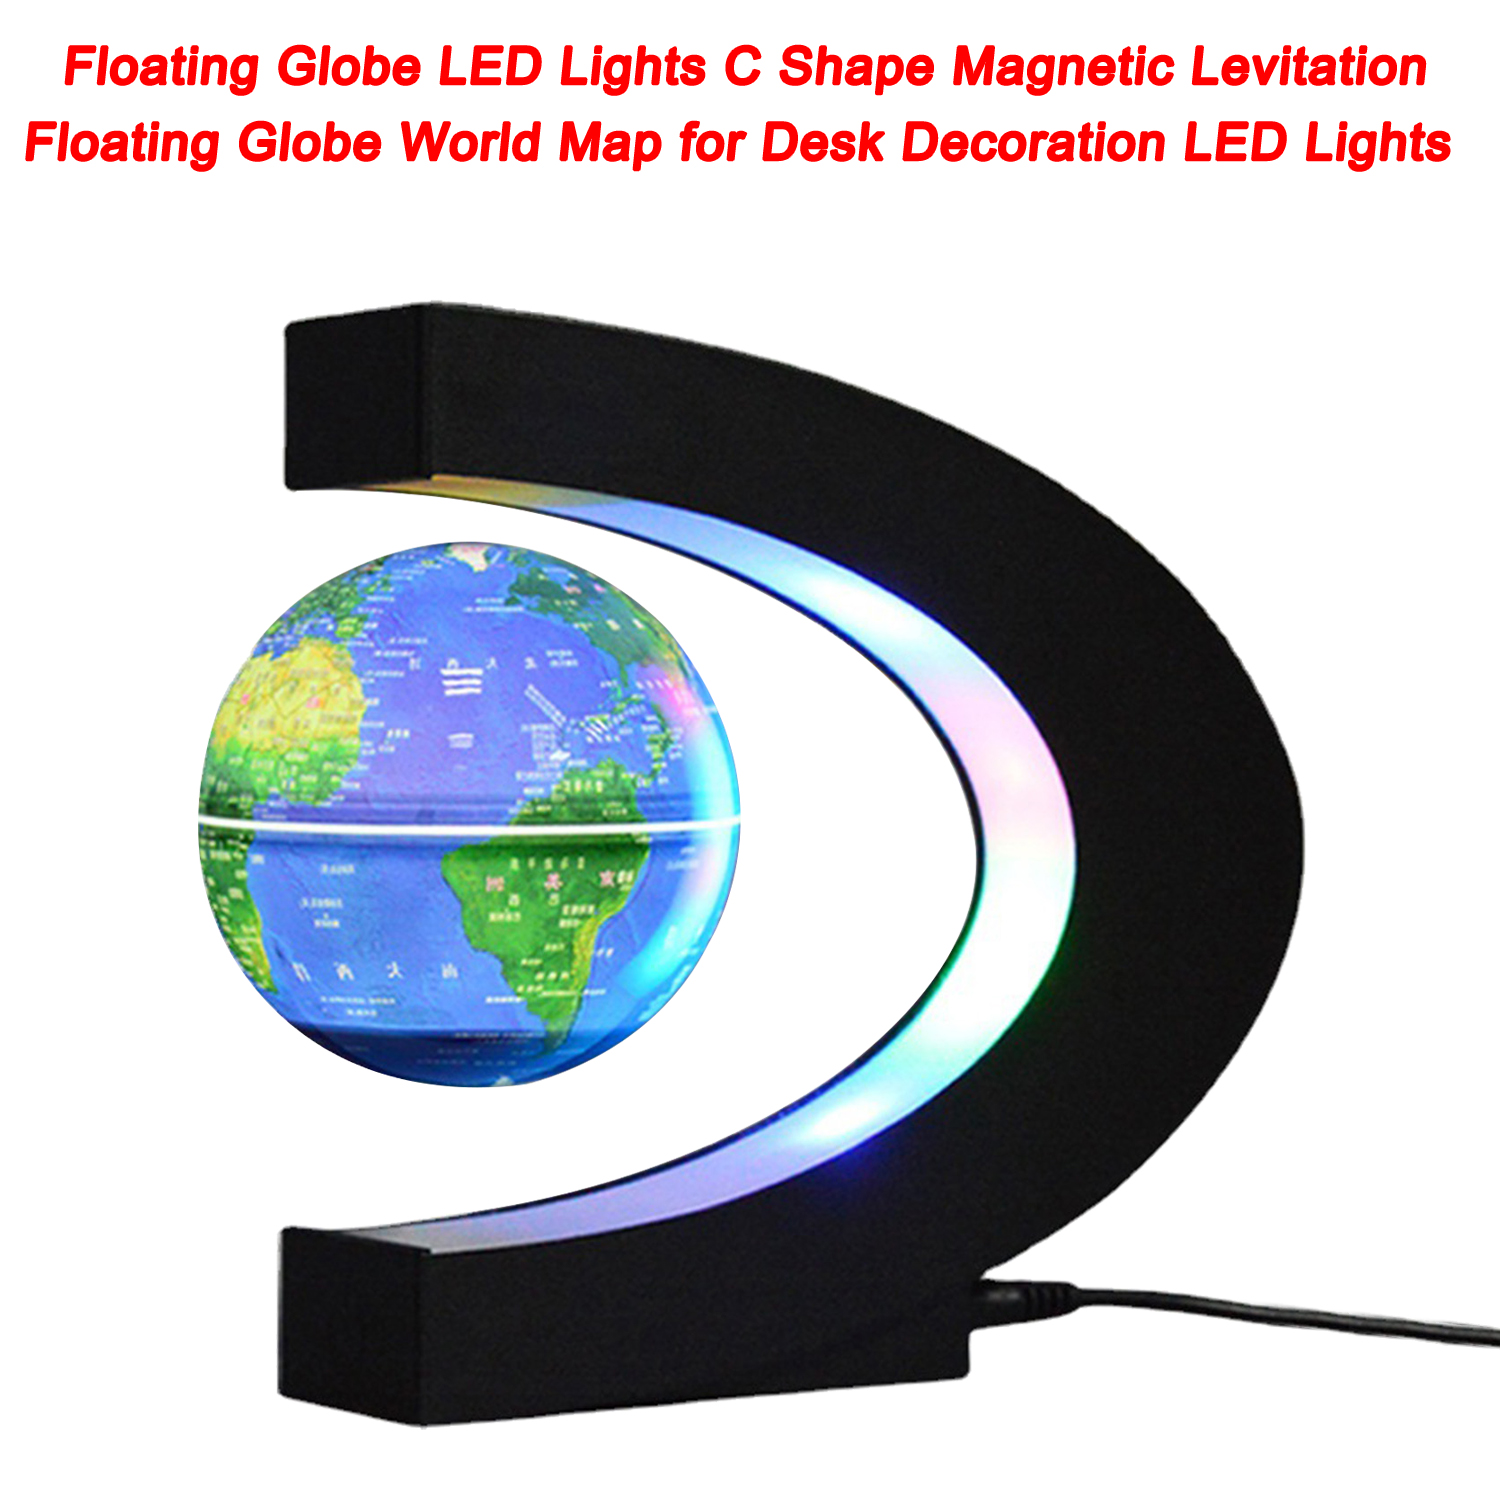 Globo flotante Luces LED Forma de C Levitación magnética Globo flotante Mapa mundial para decoración de escritorio Luces LED 